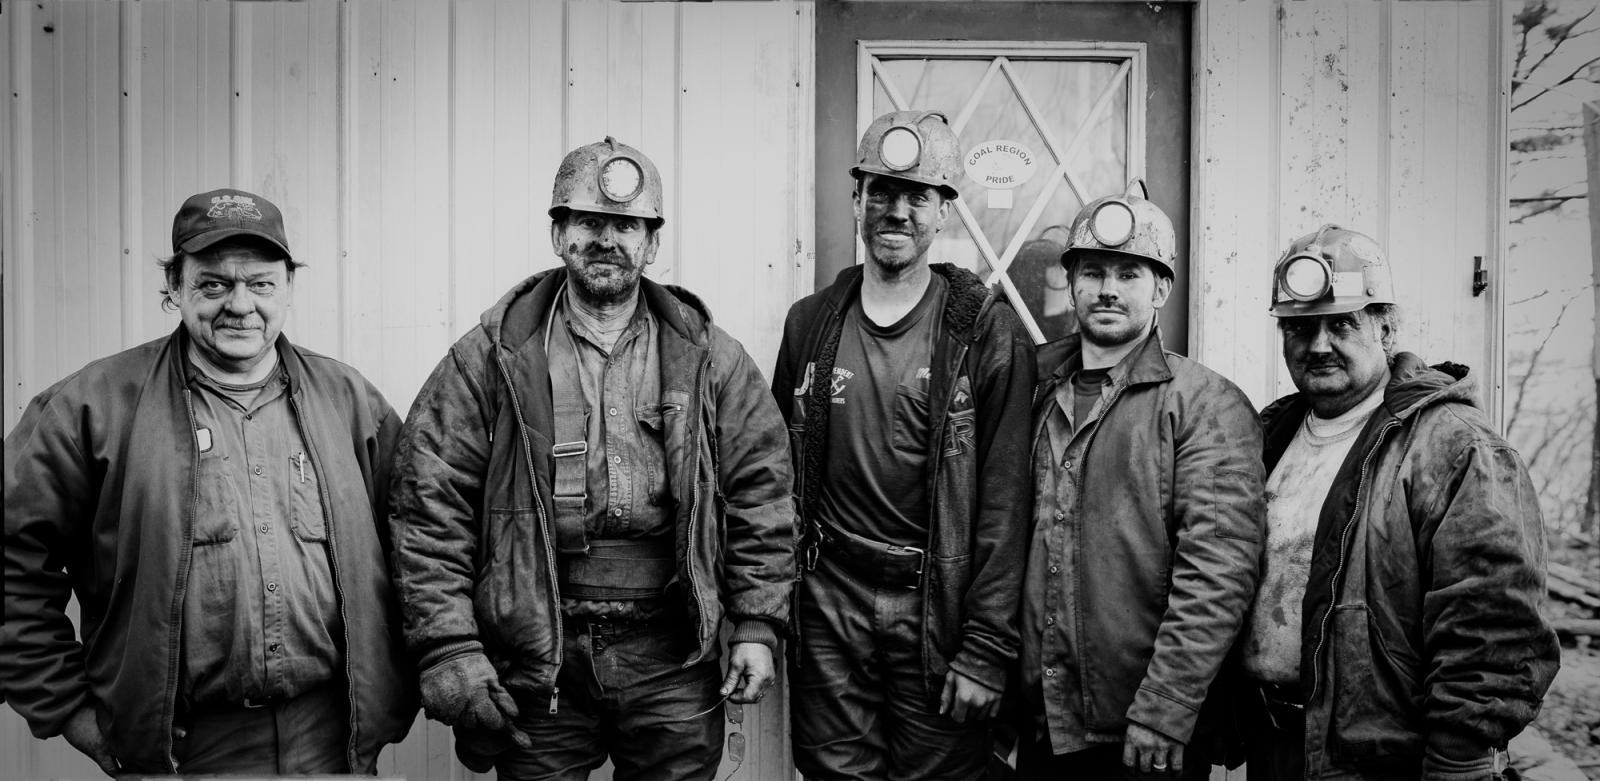 The Portraits -   S&M Mine crew  